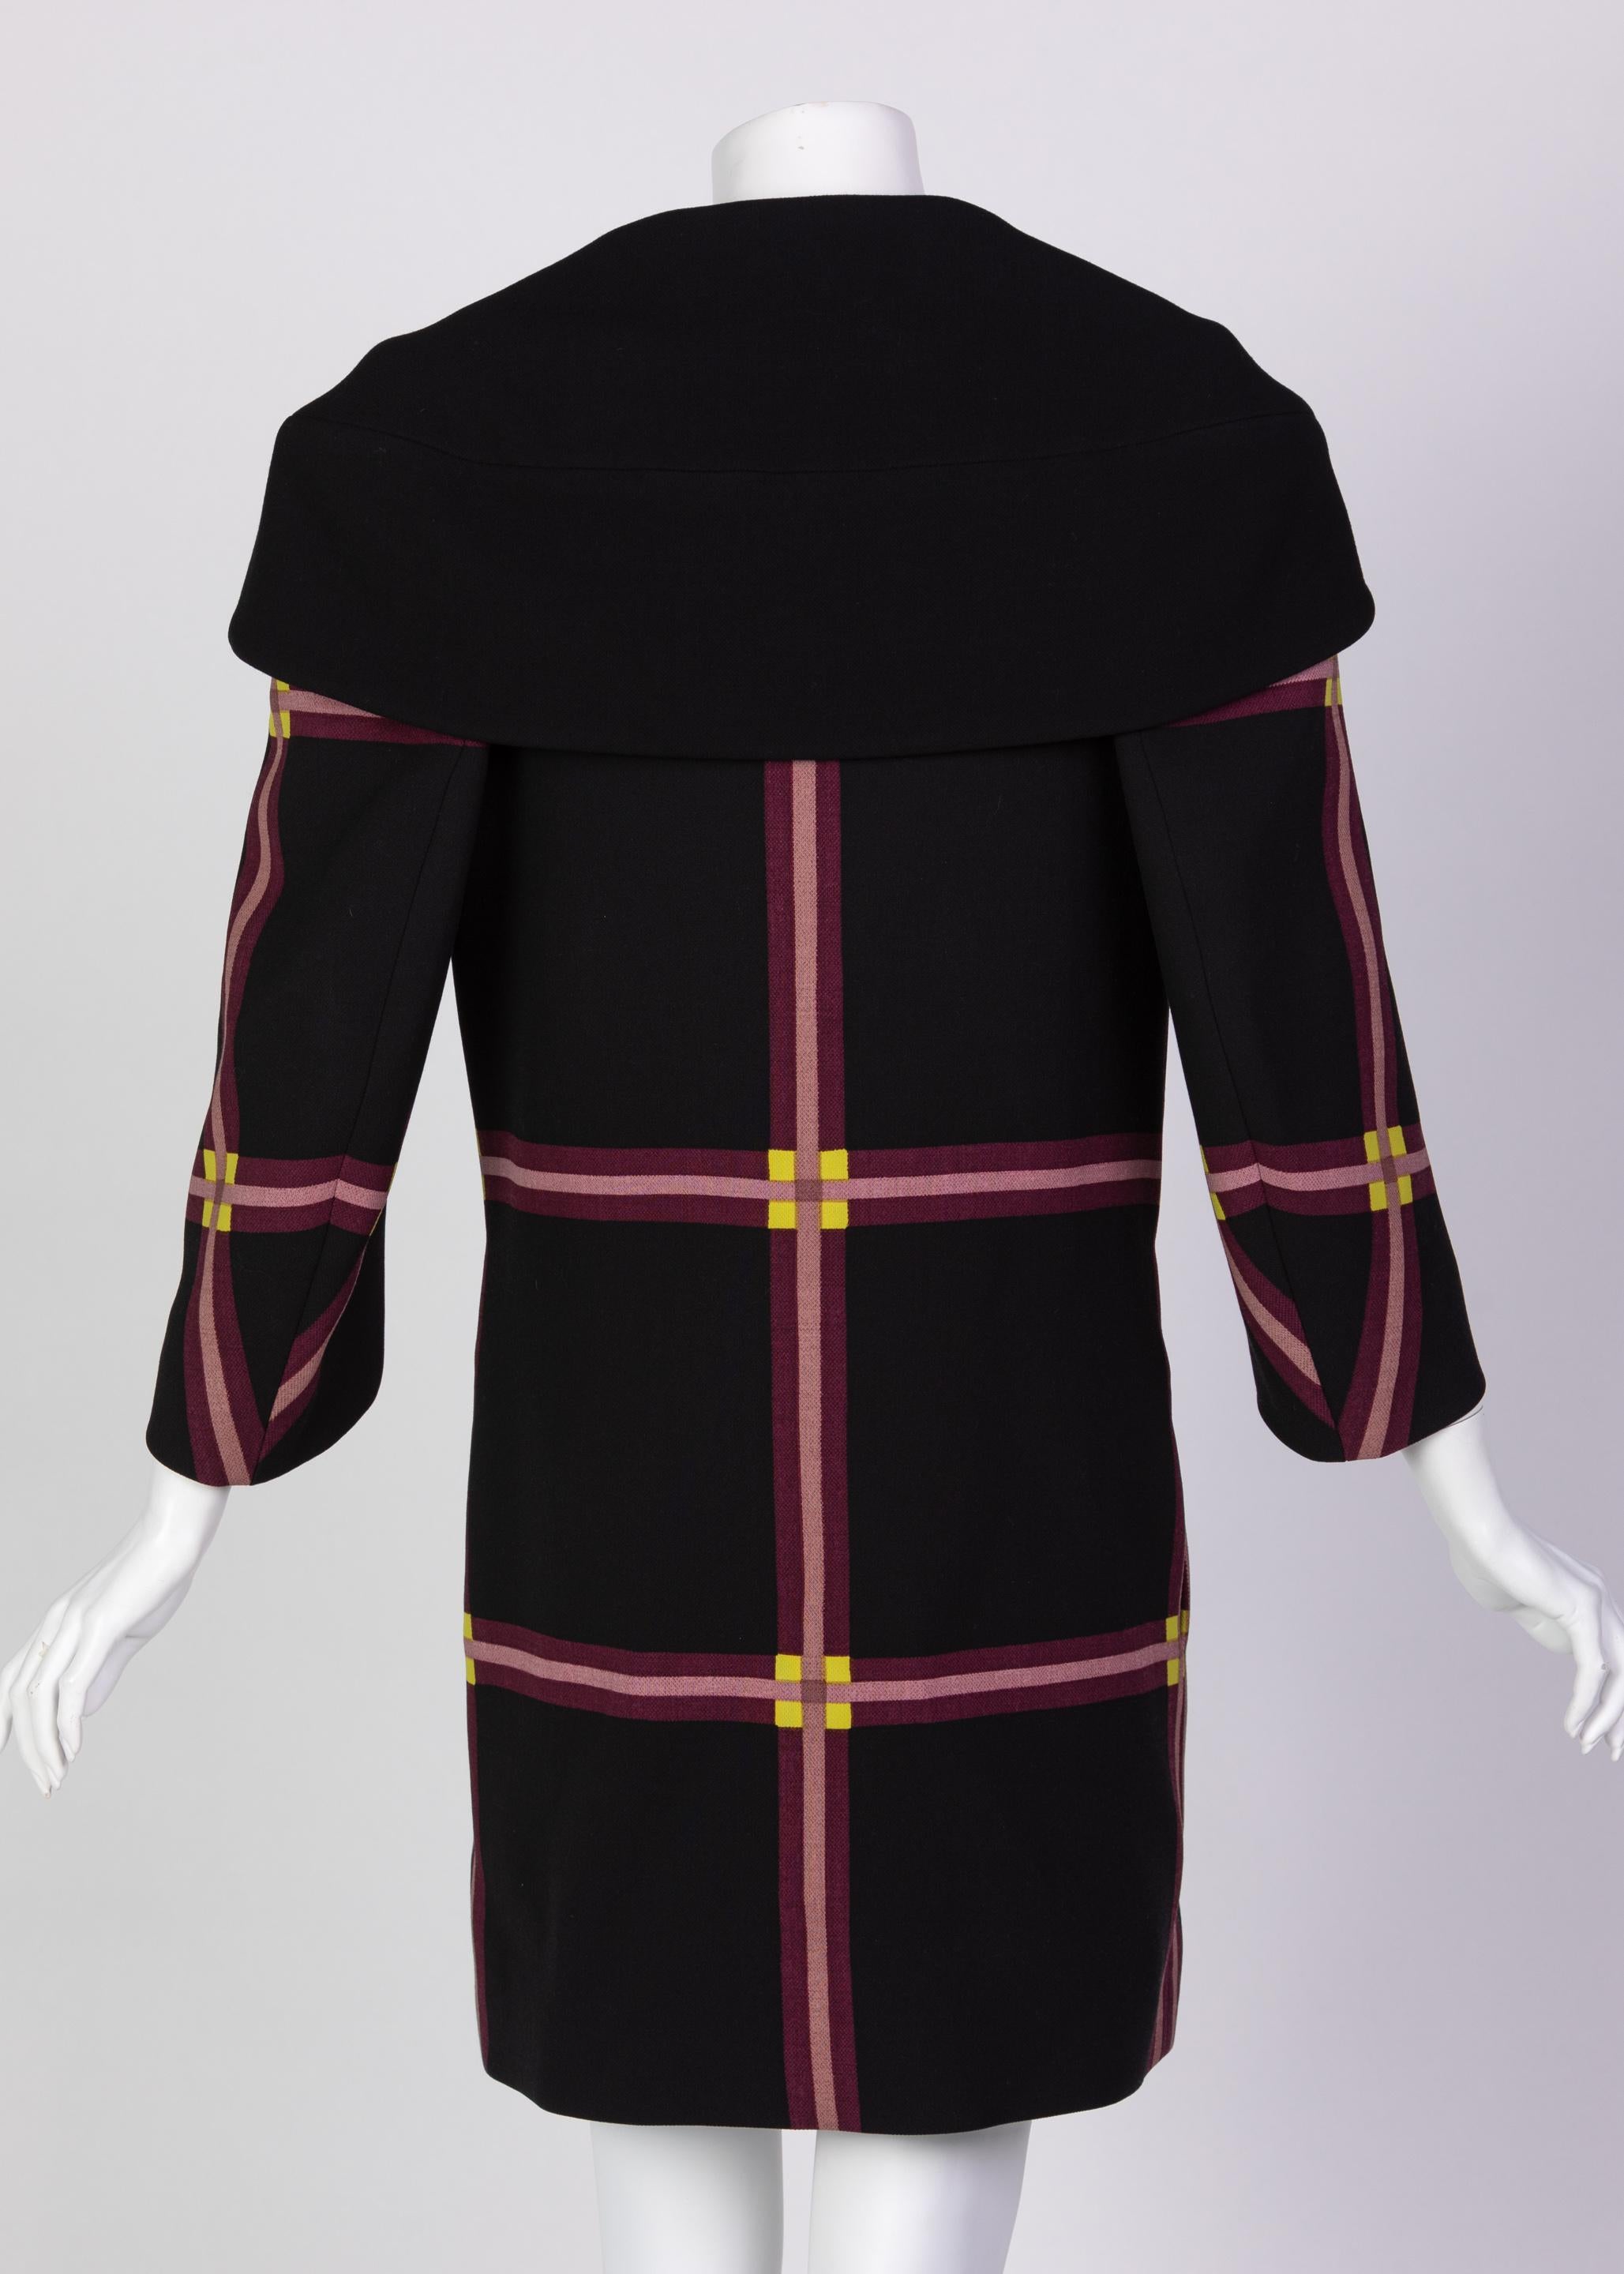 Prada Black Window Pane Wool Coat w/ Red Belt Runway, 2011 For Sale 1